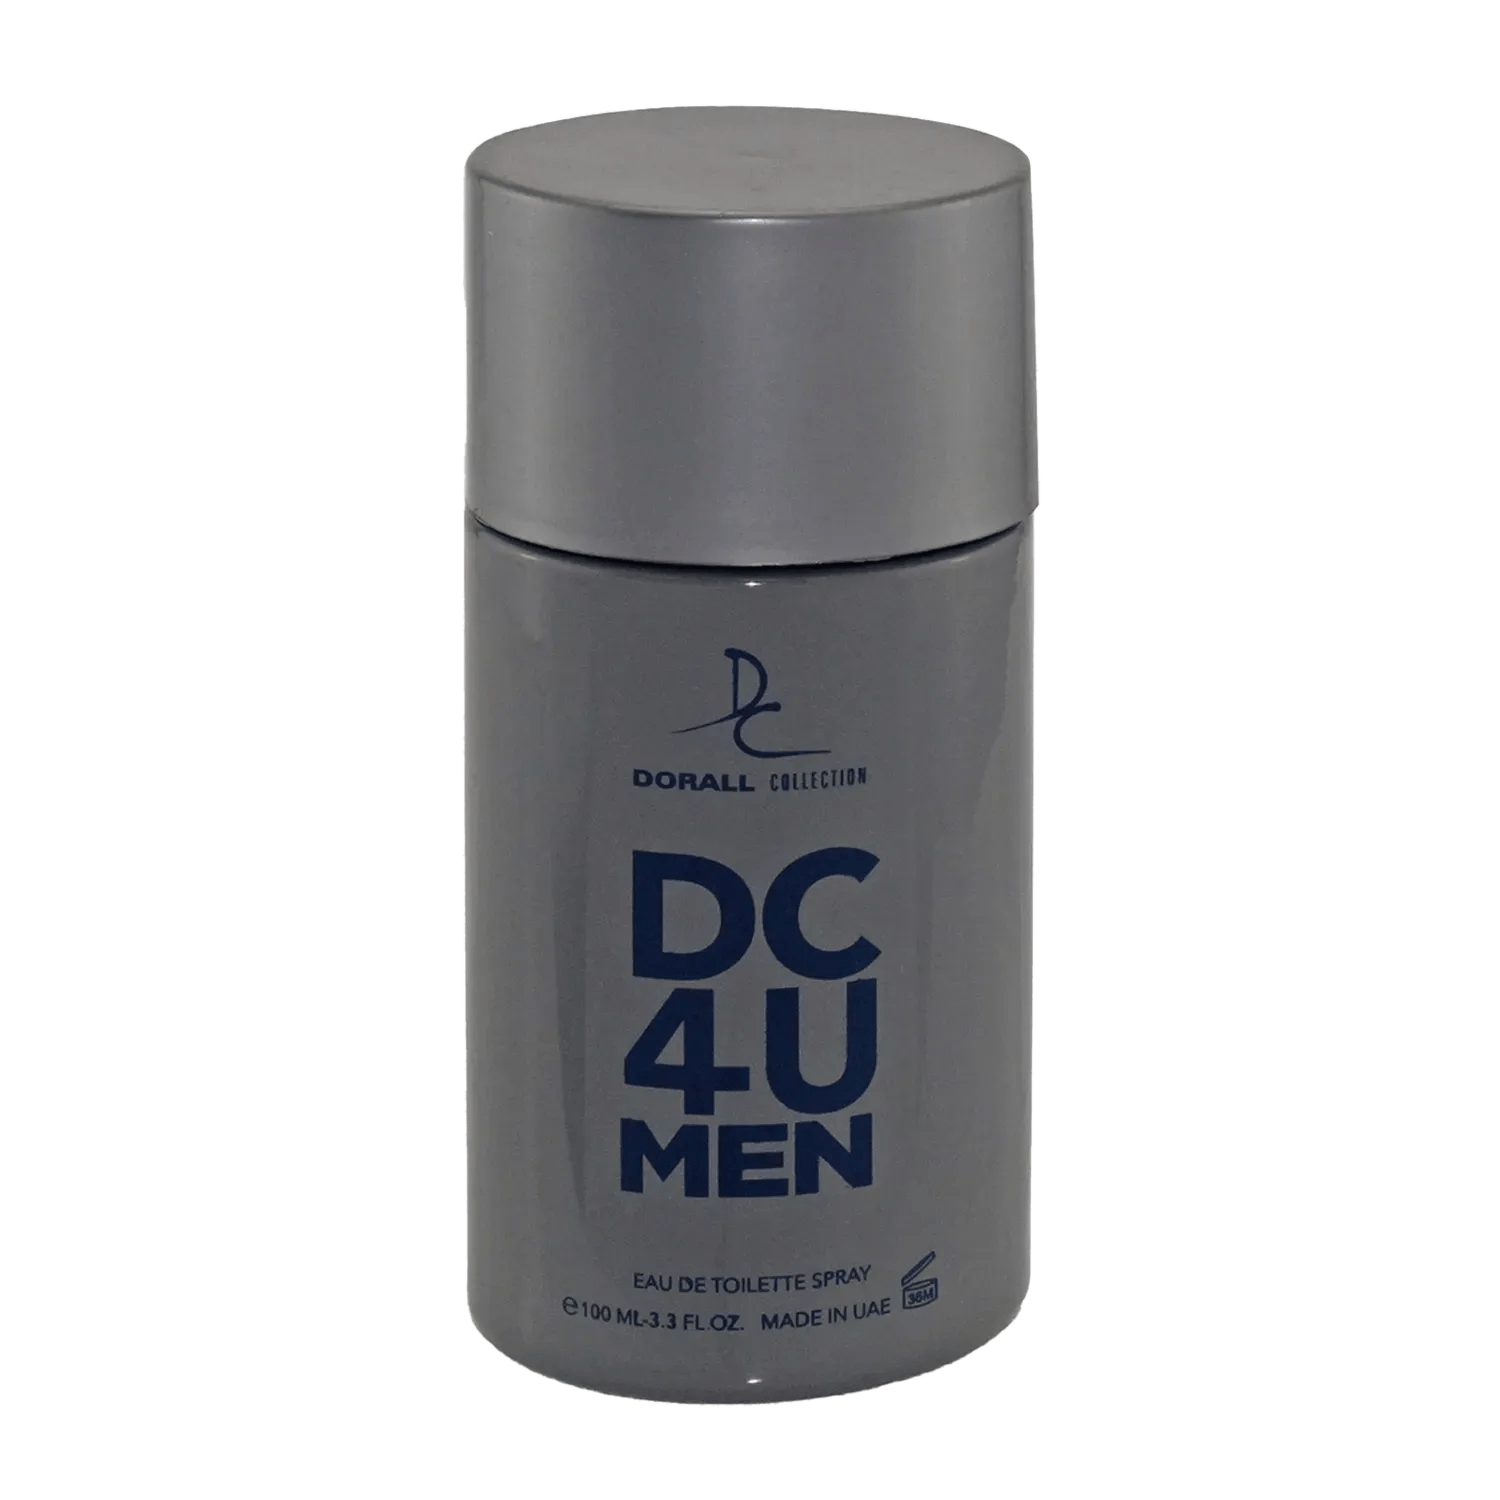 Dorall Collection | Dorall Collection DC 4 U Eau De Toilette For Men (100ml)